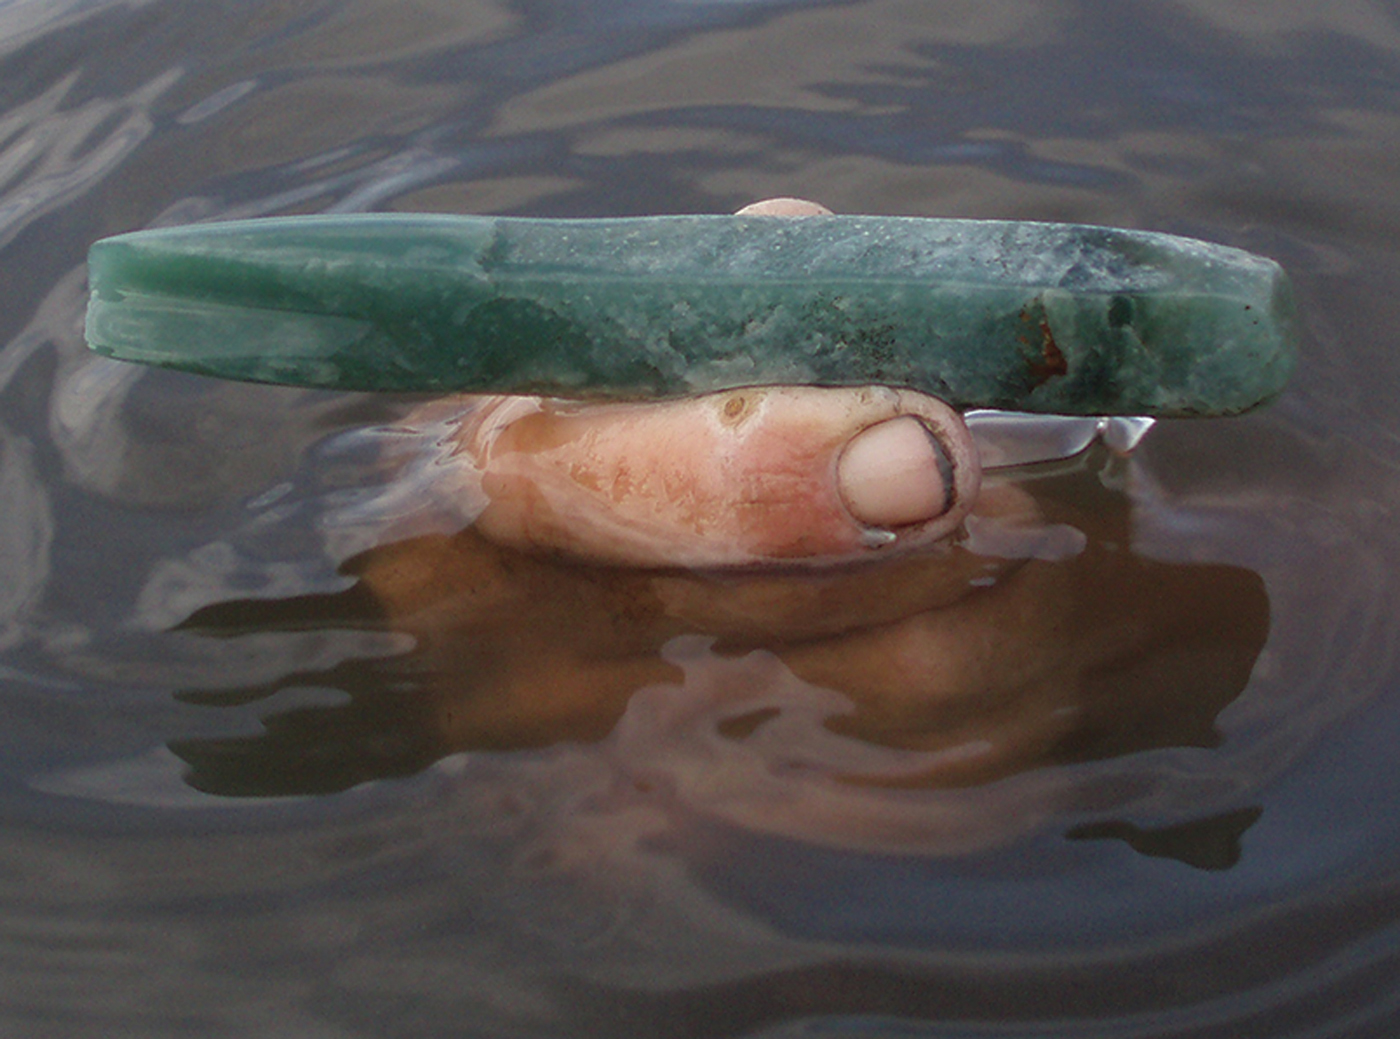 Photo of jadeite tool held in water.